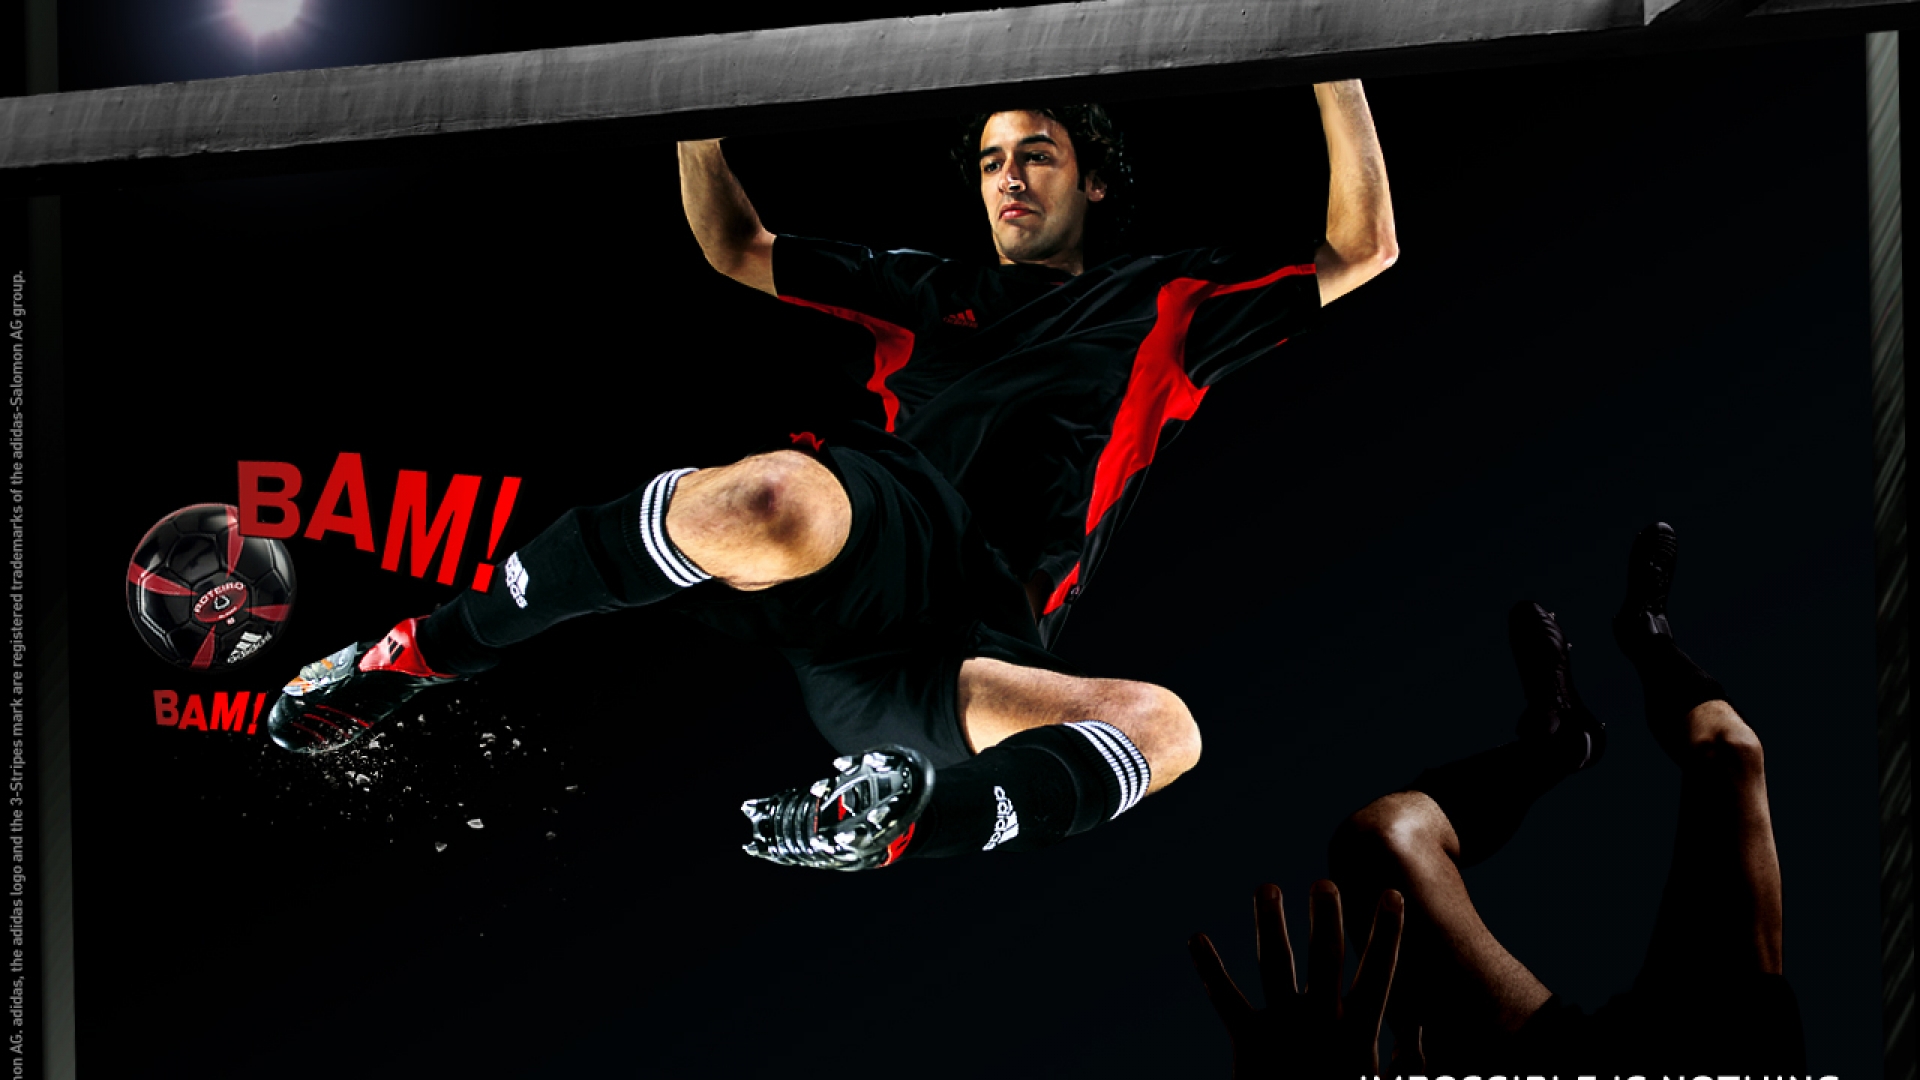 Raul Soccer Wallpaper